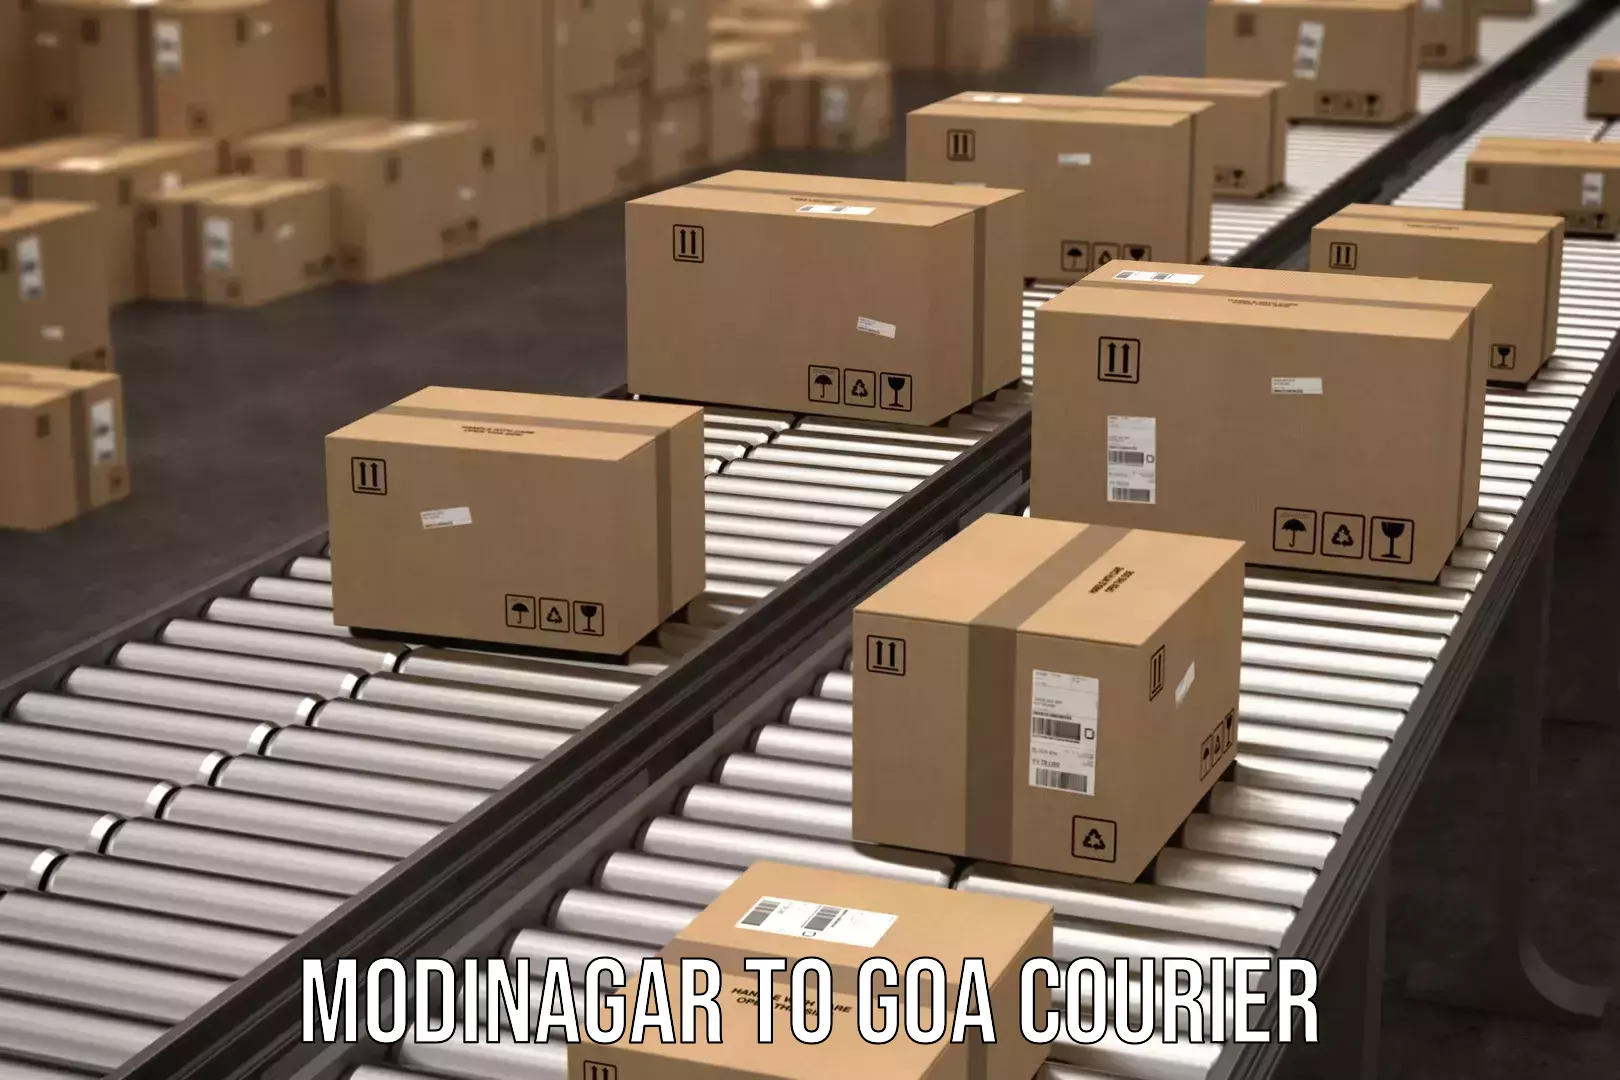 Courier service comparison Modinagar to Bardez